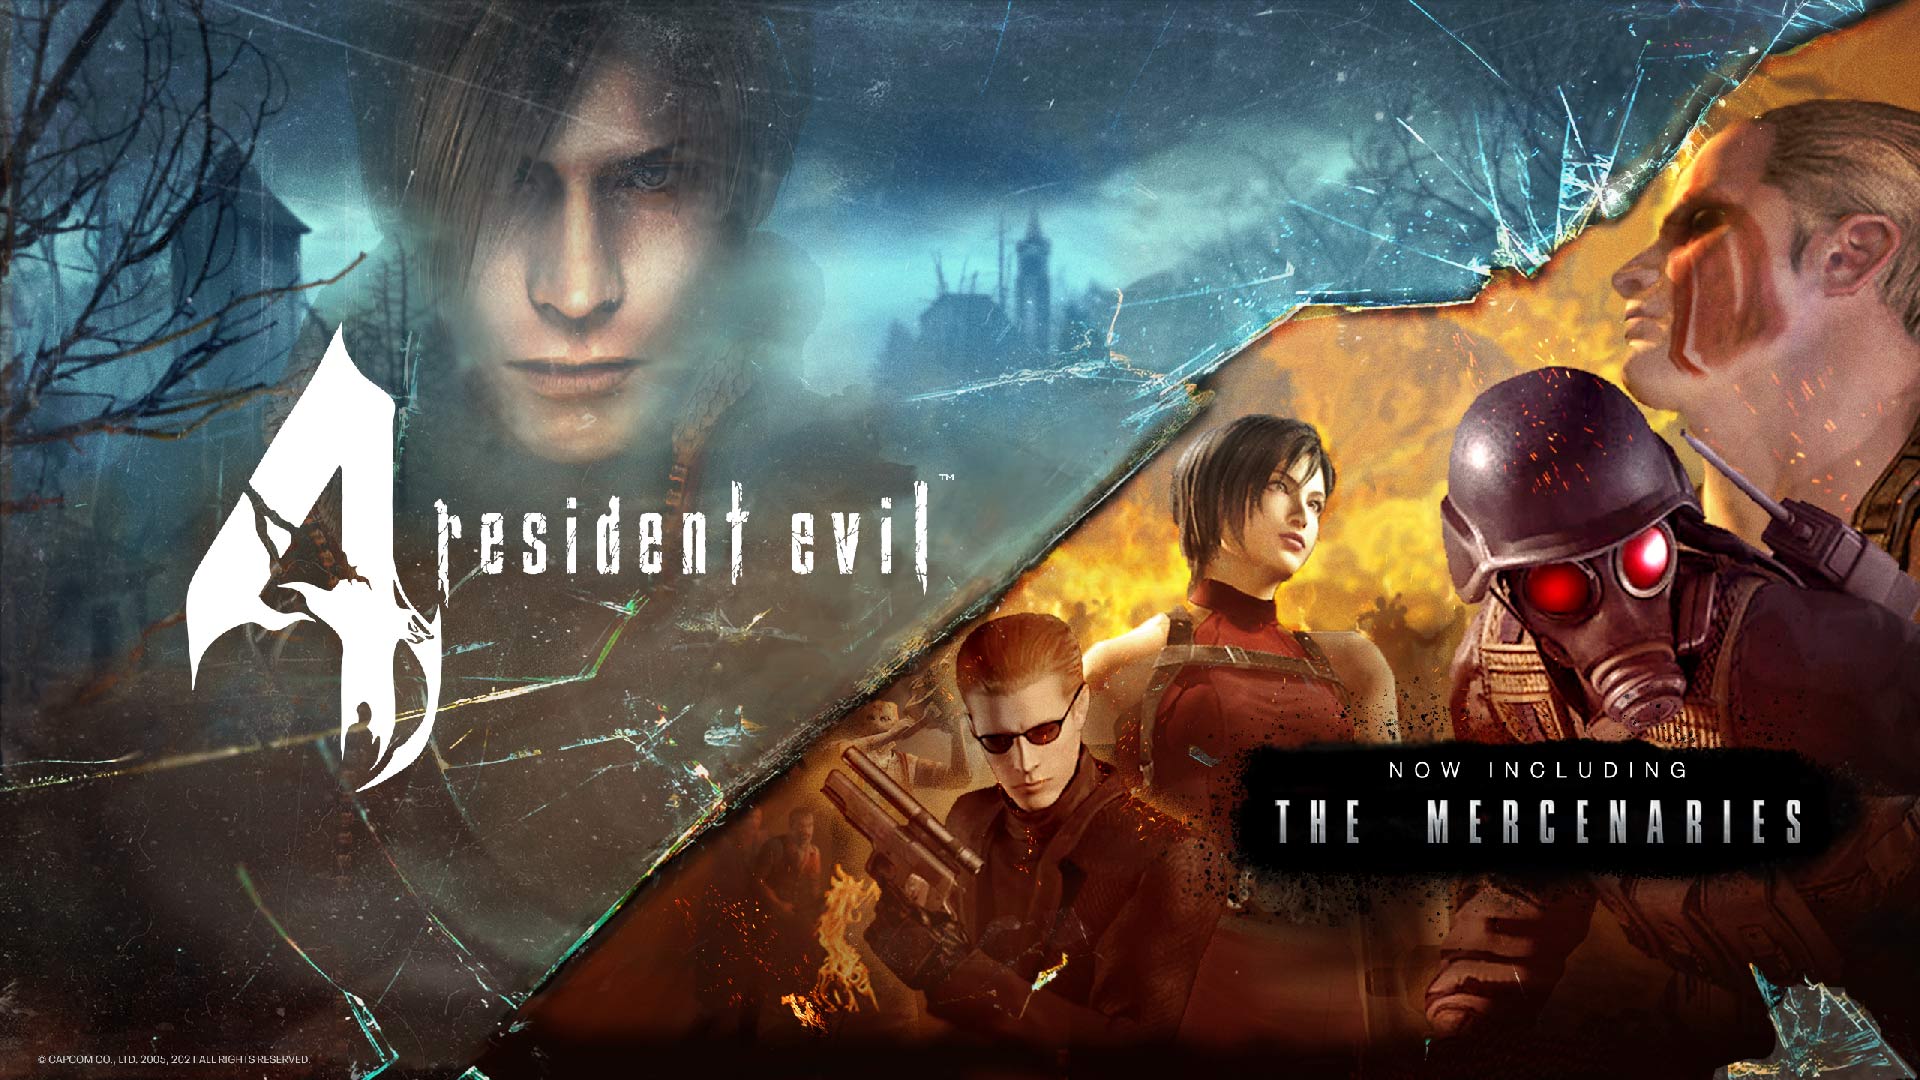 Resident Evil 4 - 2nd Trailer 